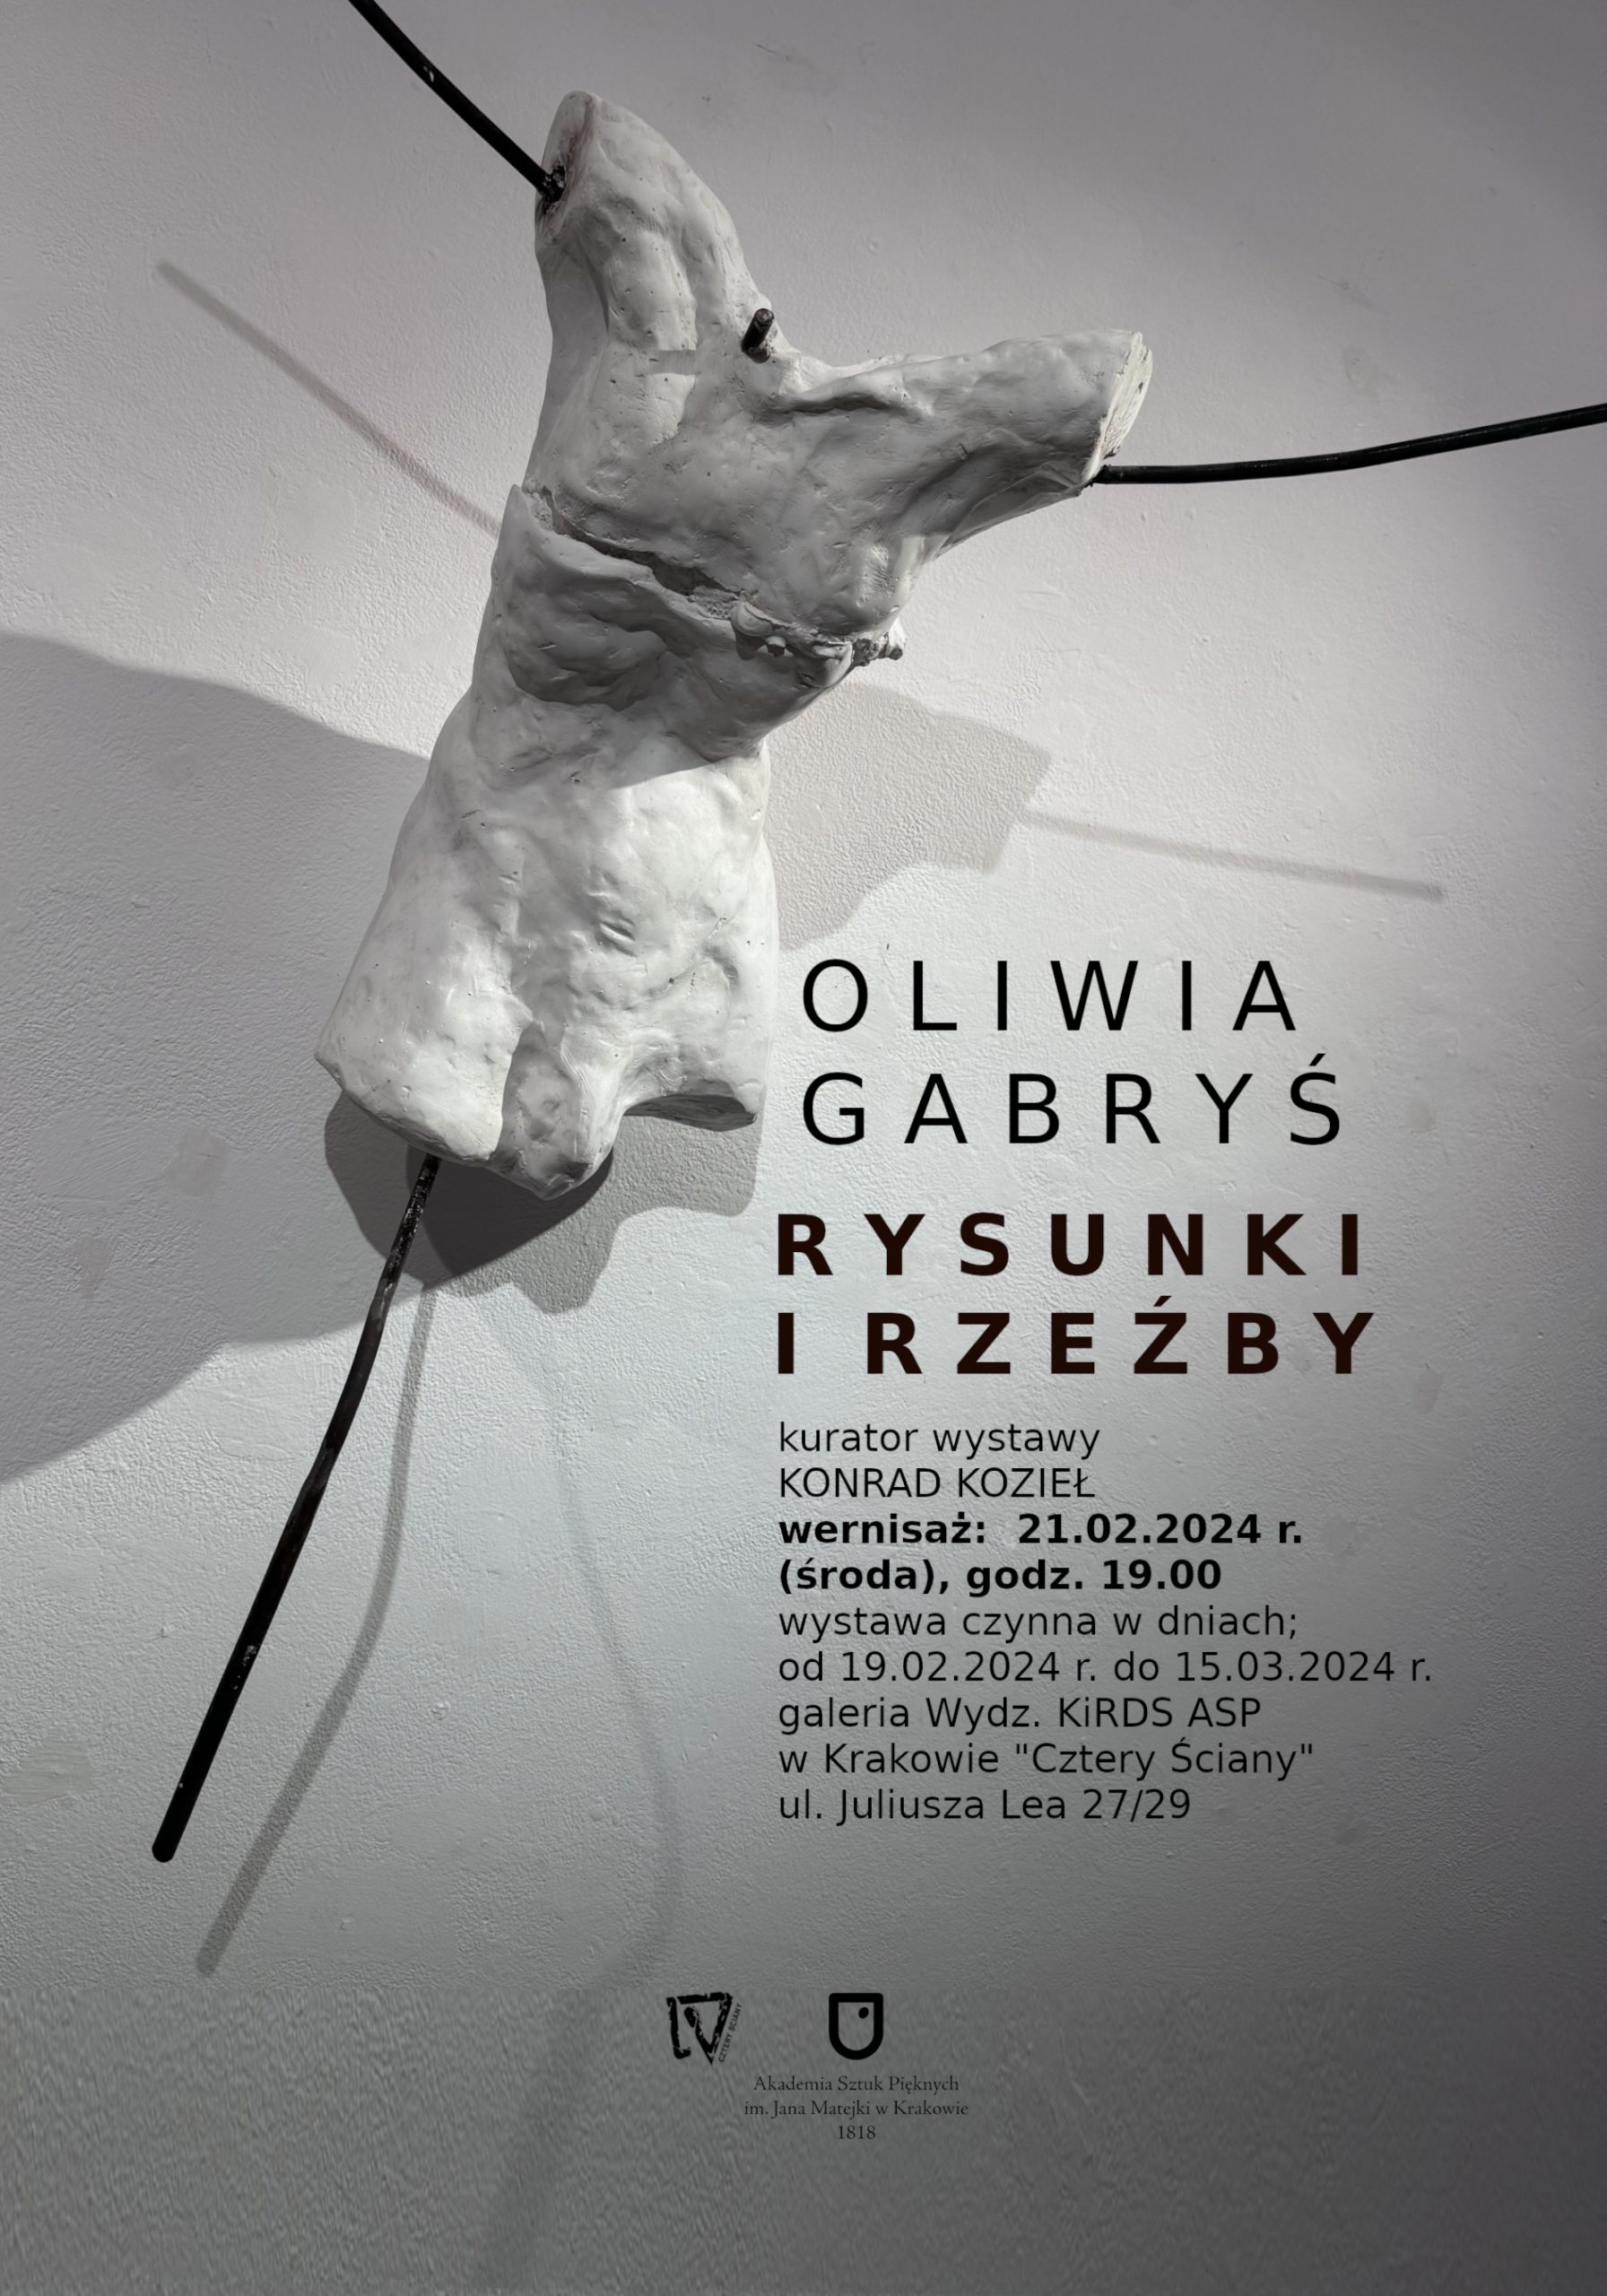 Oliwia Gabryś. Rysunki i rzeźby – zaproszenie na wernisaż